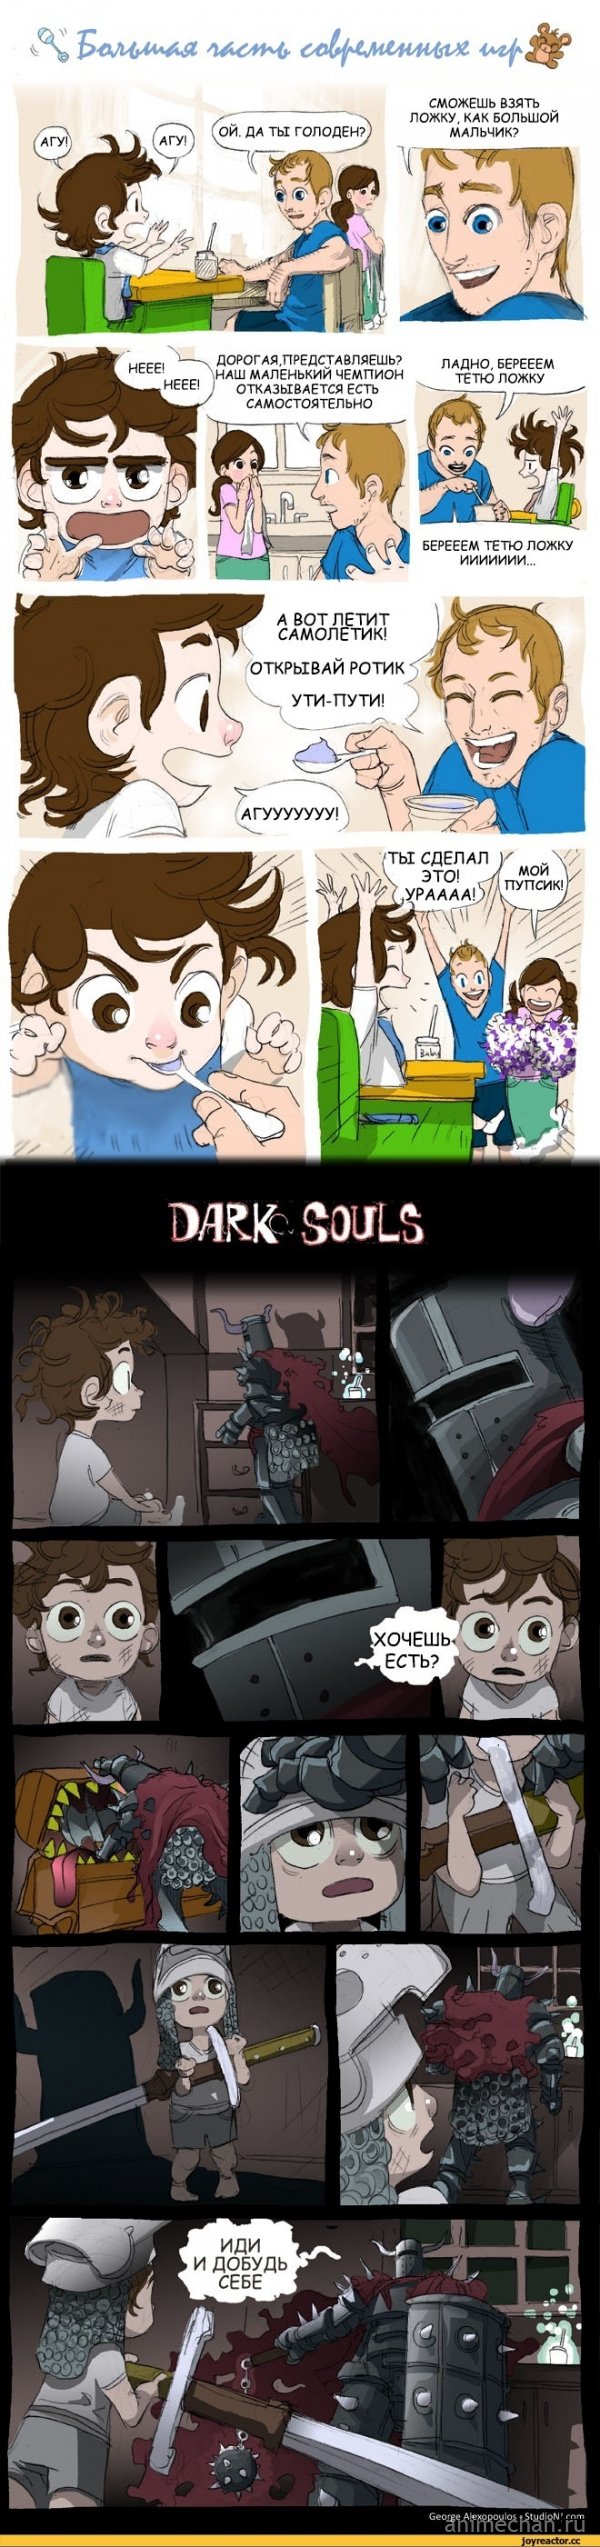 Игры...и Dark Souls